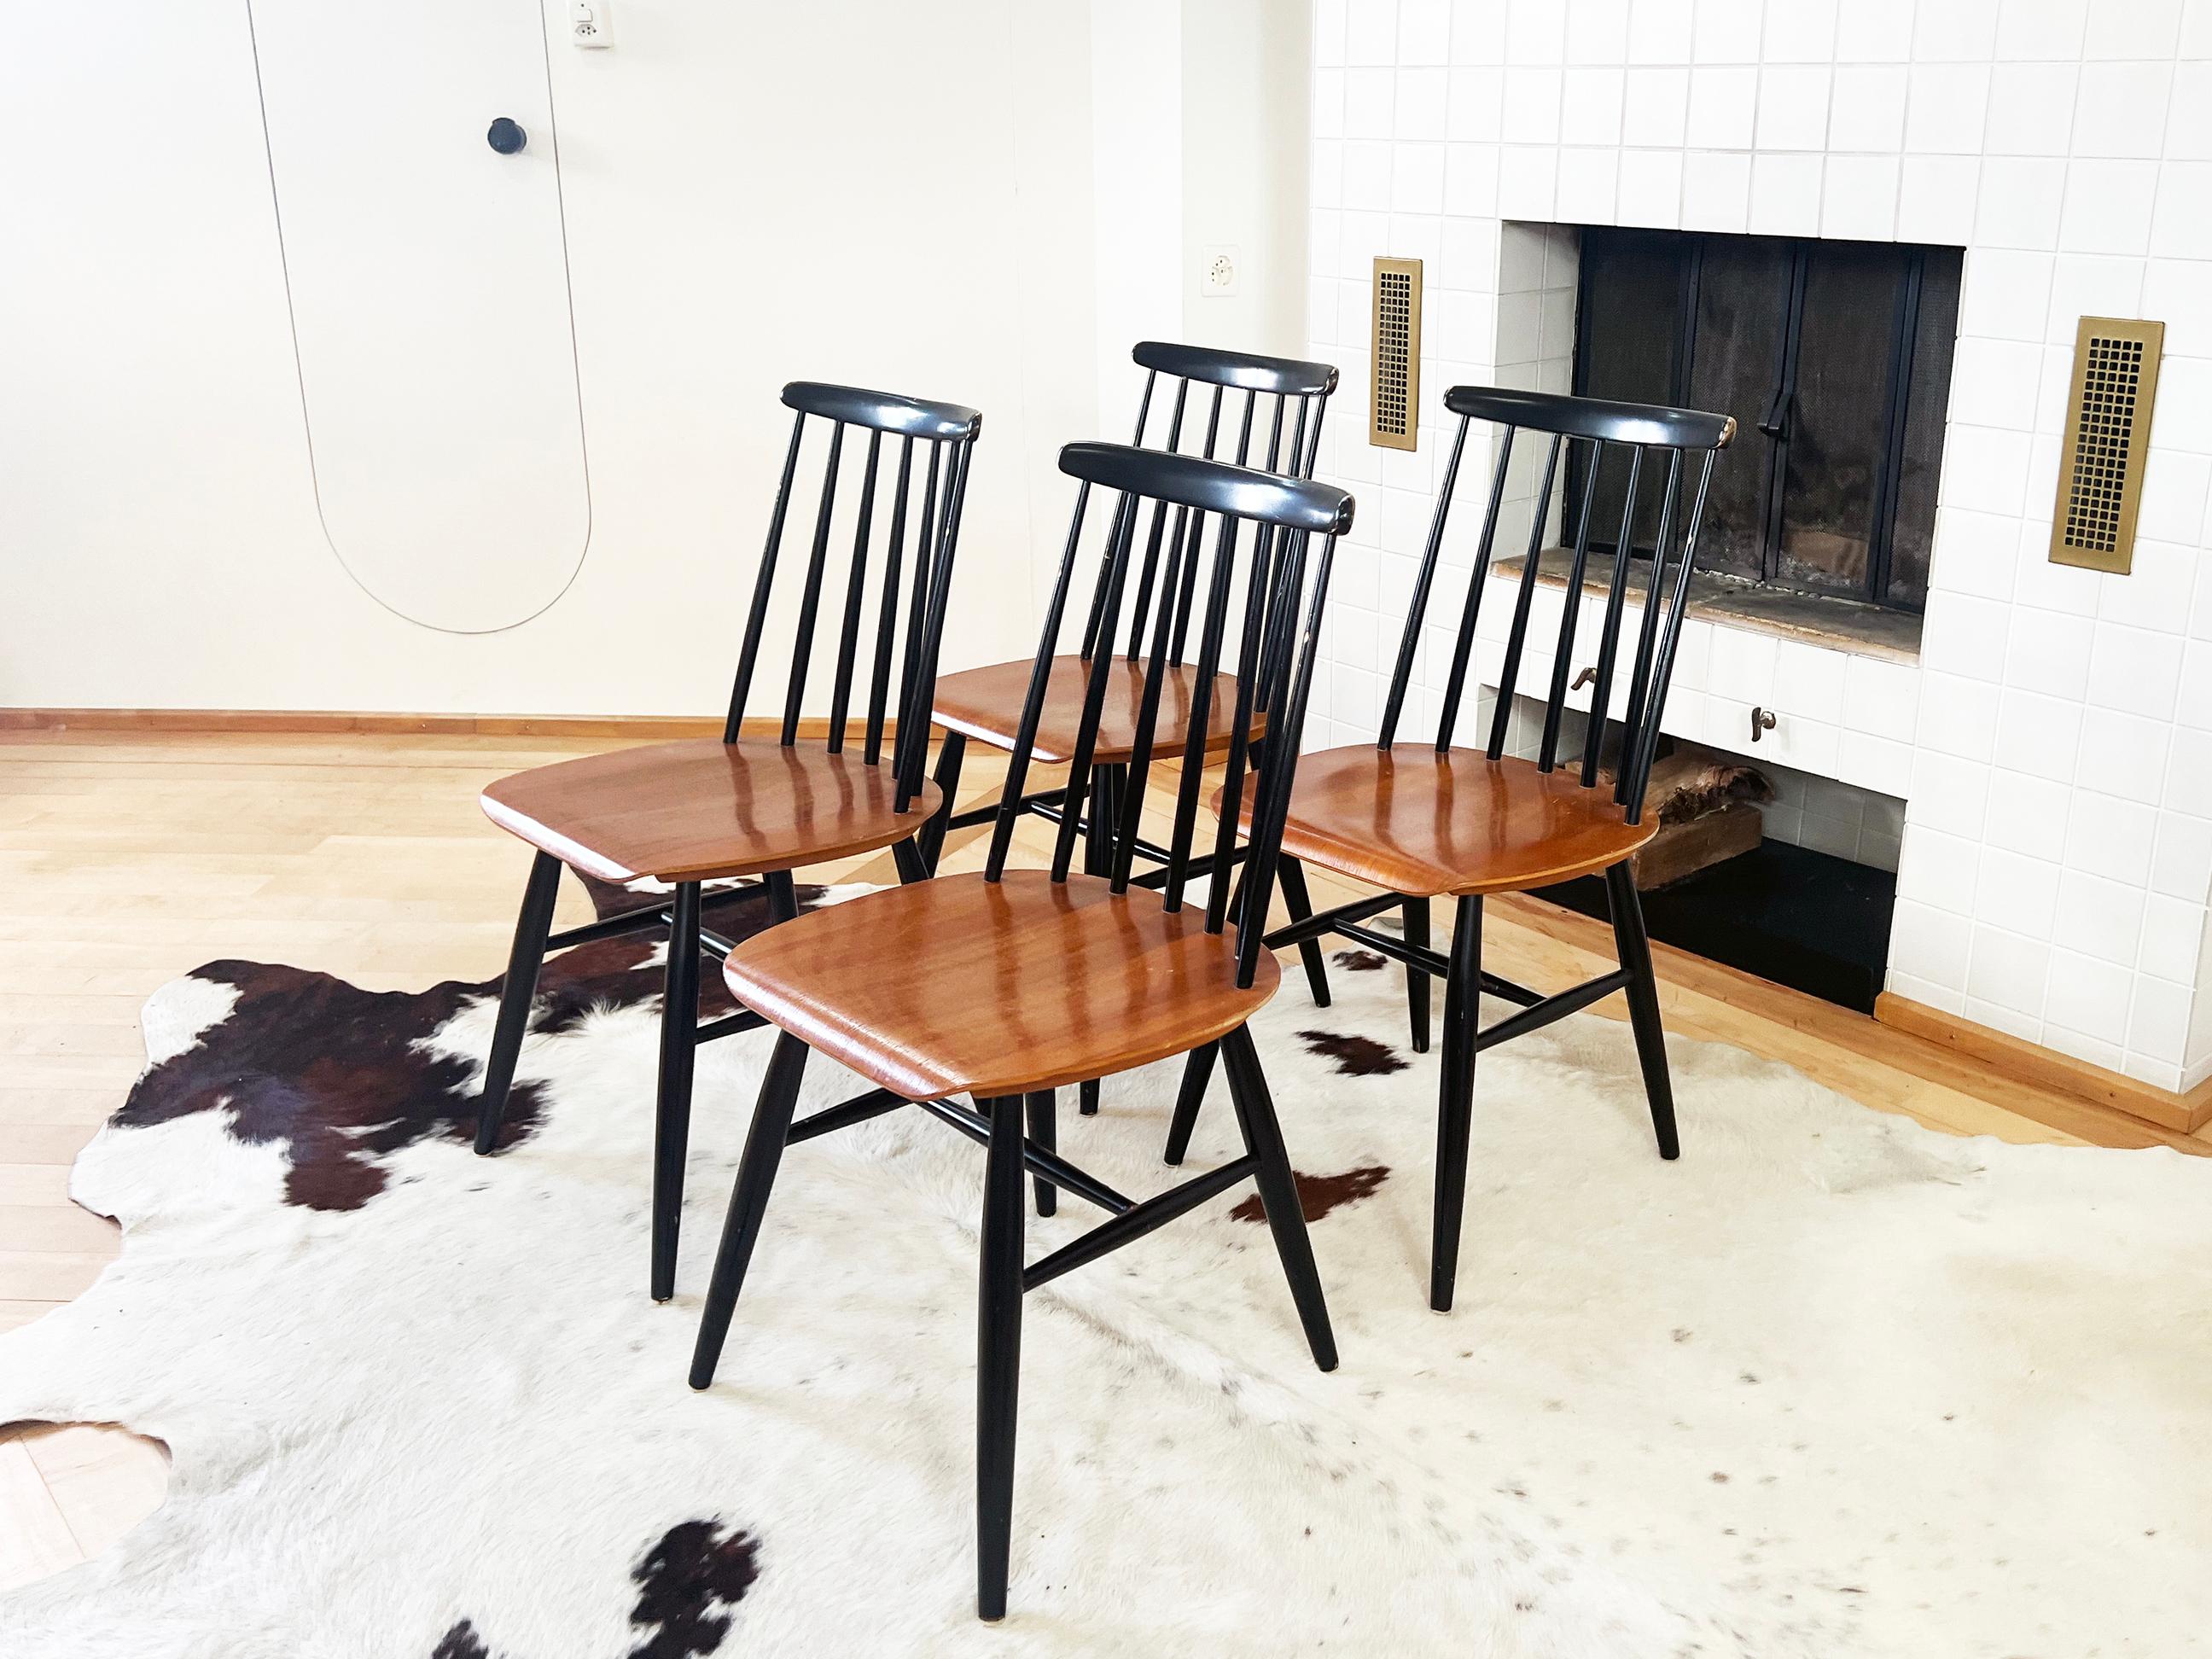 Ensemble de quatre chaises de salle à manger Fannet conçues dans les années 1960 par le designer finlandais Ilmari Tapiovaara.
Elles sont dotées d'une rare assise incurvée en teck et de 7 fuseaux. Un design magnifique.

Les chaises sont en bois